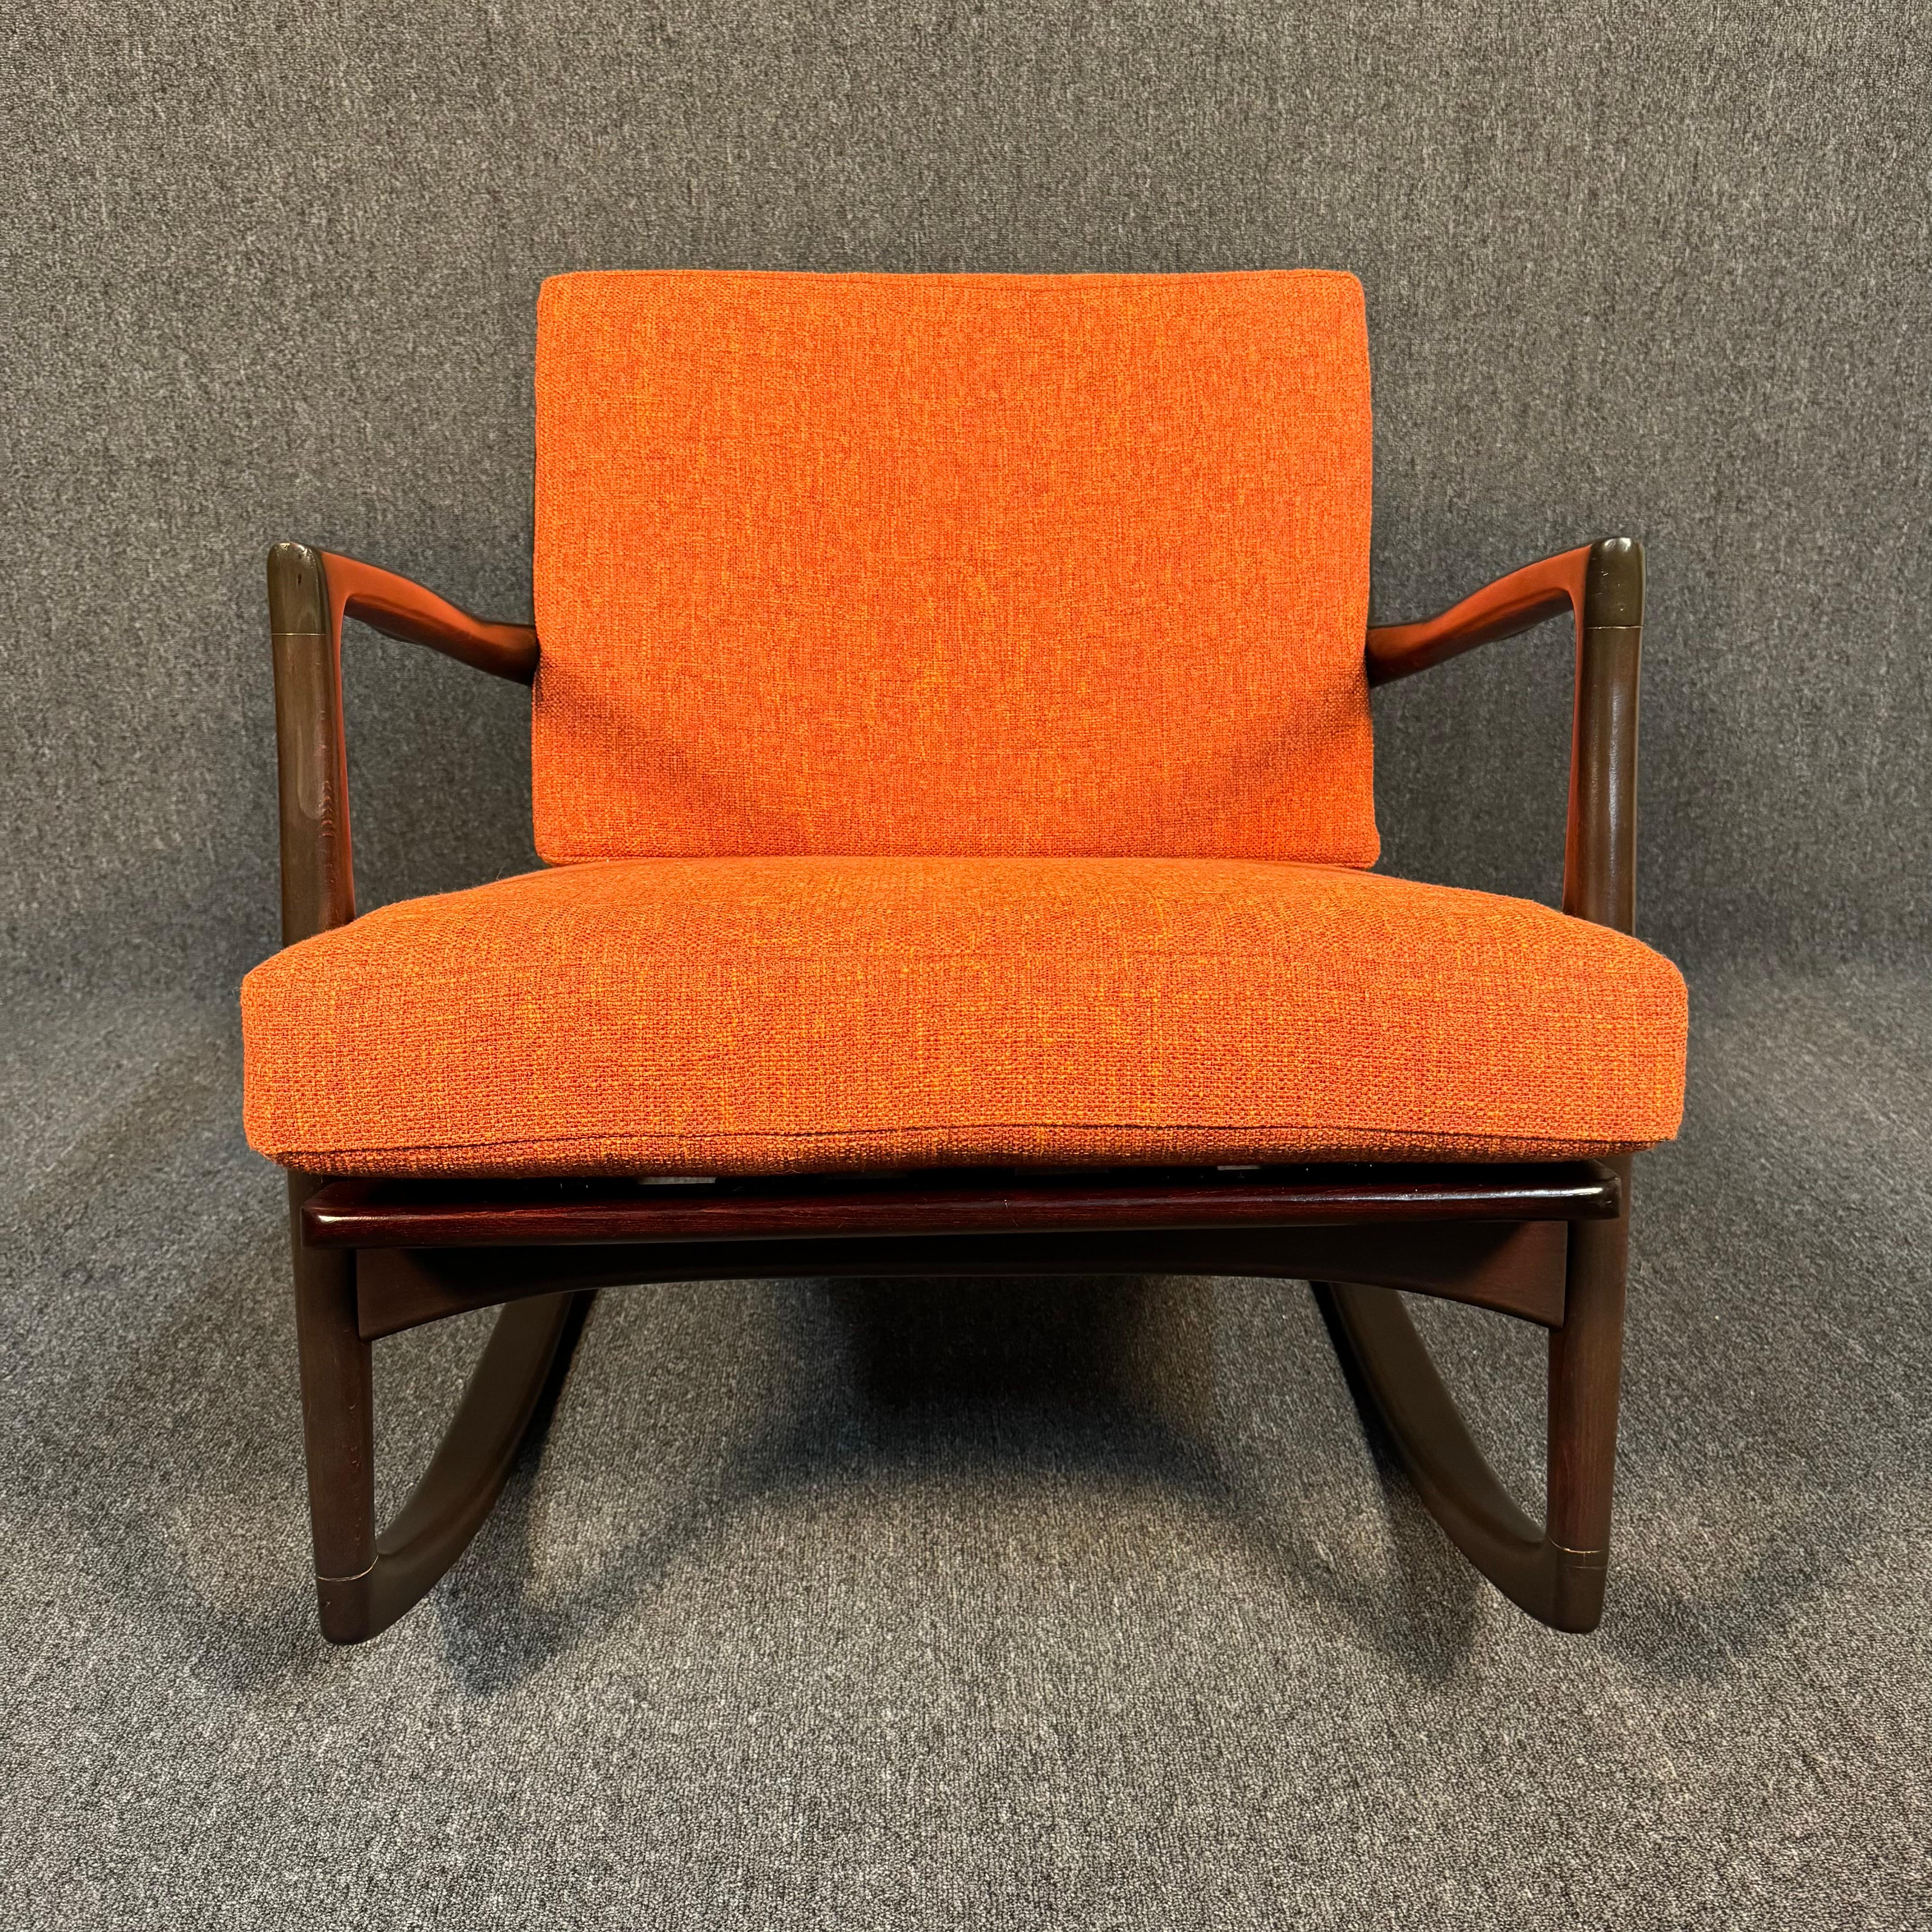 Voici un magnifique fauteuil à bascule moderne scandinave conçu par Ib Kofod Larsen et fabriqué par Selig au Danemark dans les années 1960.
Cette superbe chaise est composée d'un cadre sculptural en hêtre massif teinté en noyer foncé, précédemment